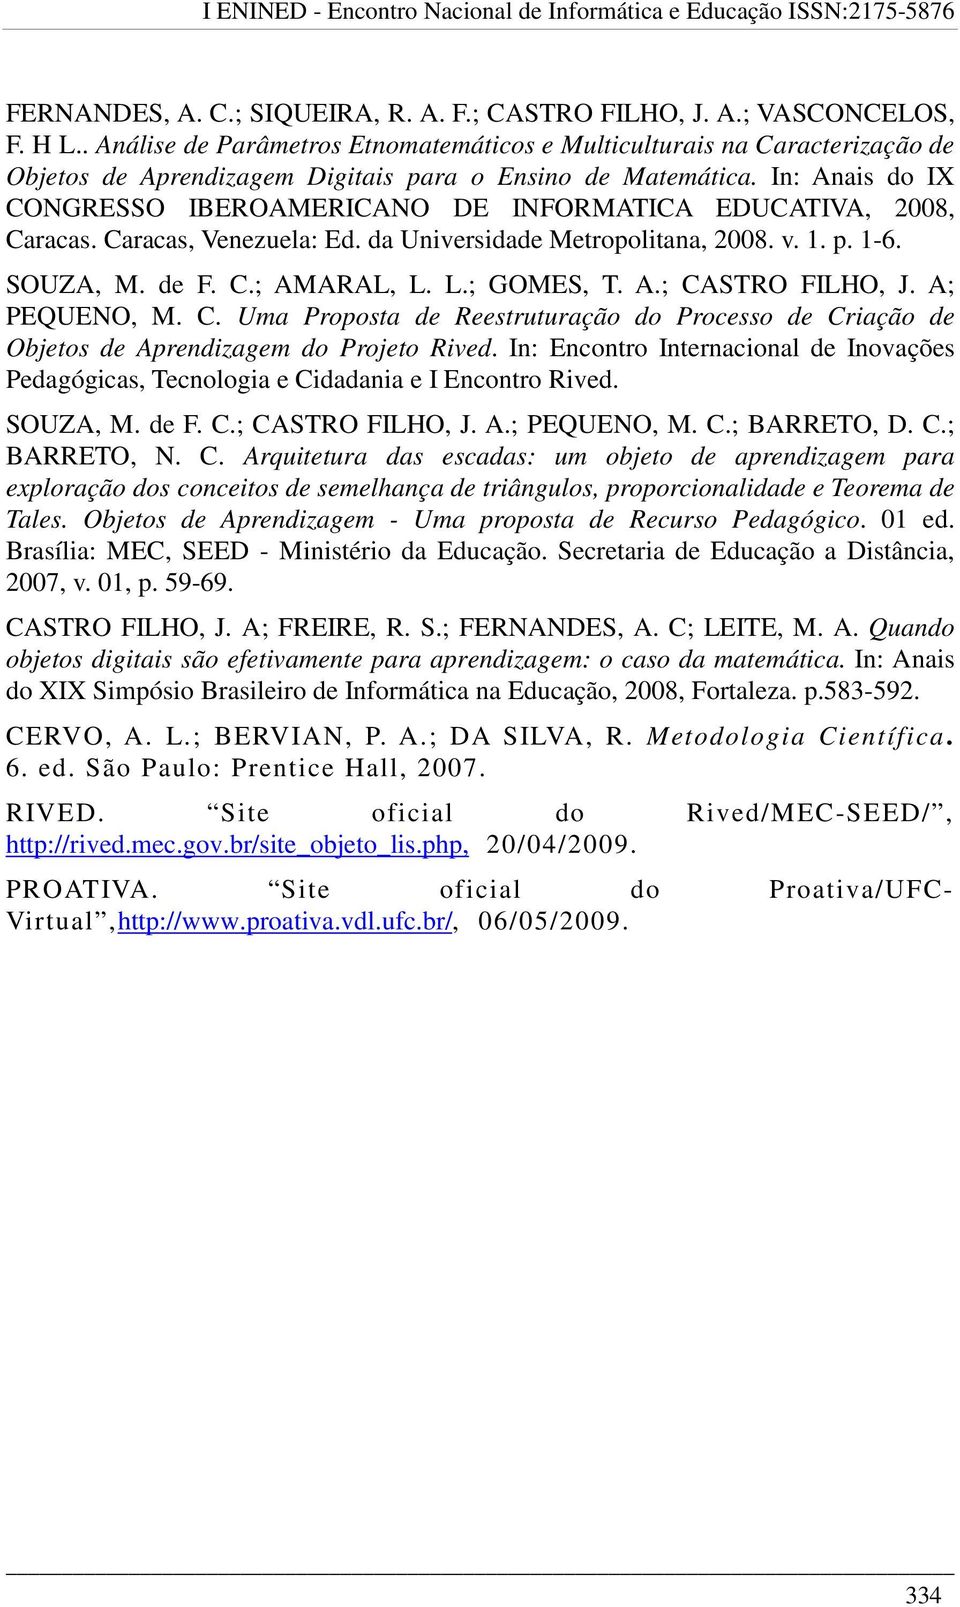 In: Anais do IX CONGRESSO IBEROAMERICANO DE INFORMATICA EDUCATIVA, 2008, Caracas. Caracas, Venezuela: Ed. da Universidade Metropolitana, 2008. v. 1. p. 1-6. SOUZA, M. de F. C.; AMARAL, L. L.; GOMES, T.